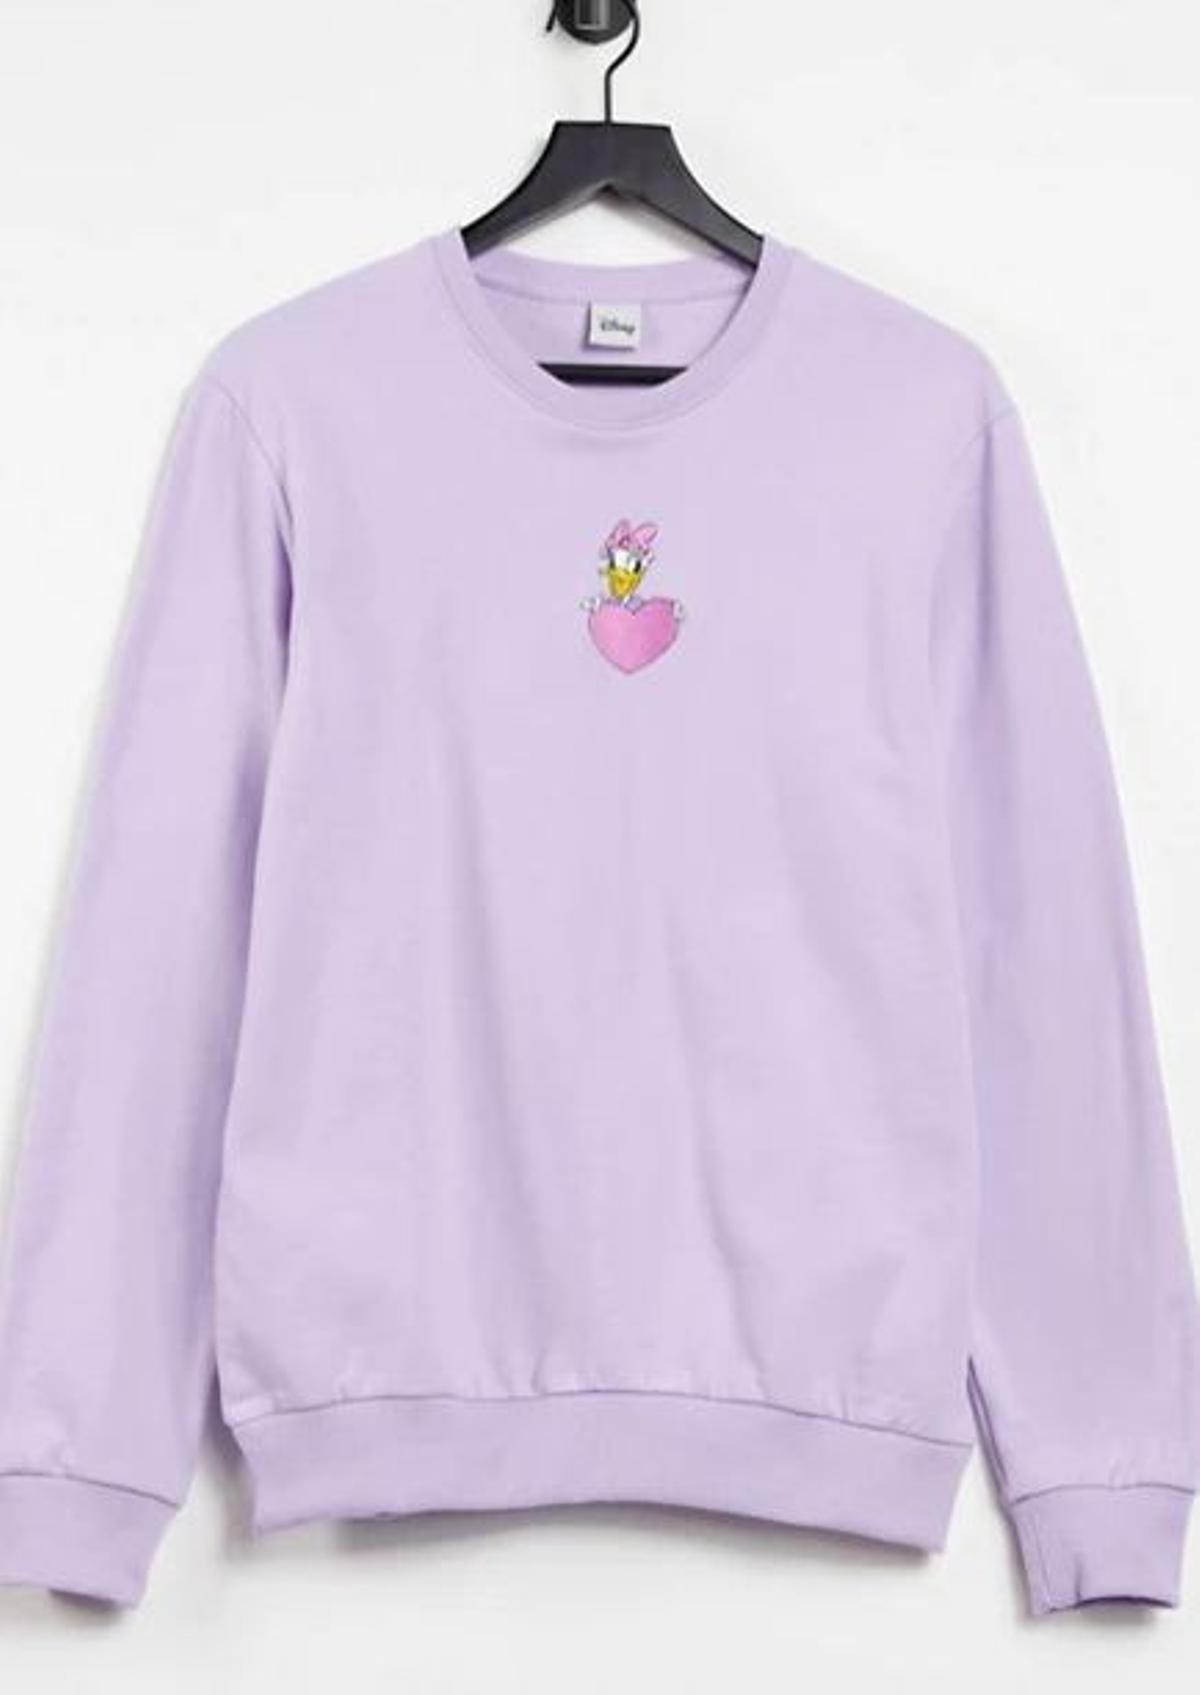 Sudadera lila con diseño bordado de Daisy de Disney